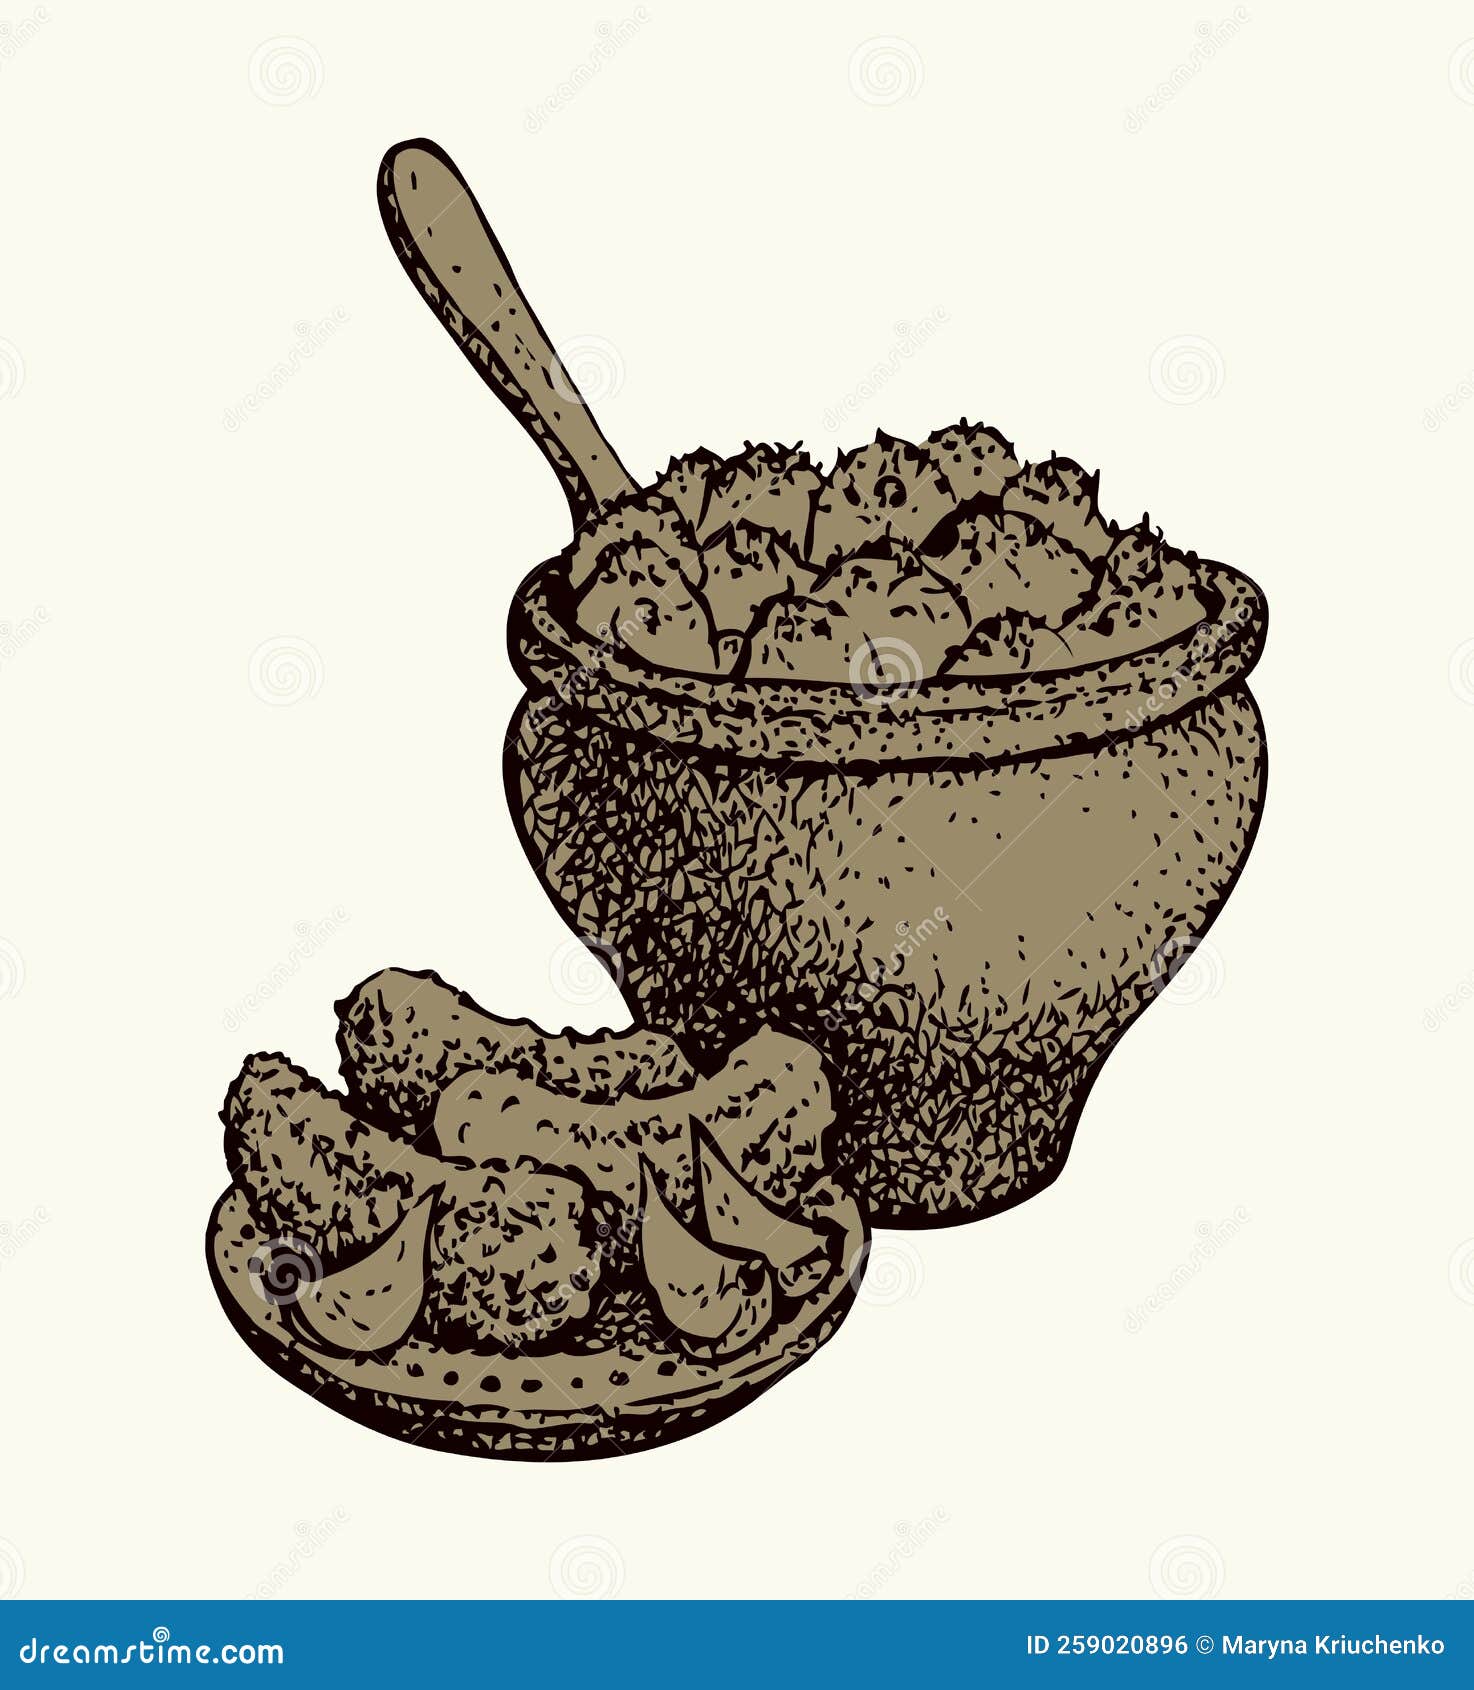 Clay Pot Cooking Cultures